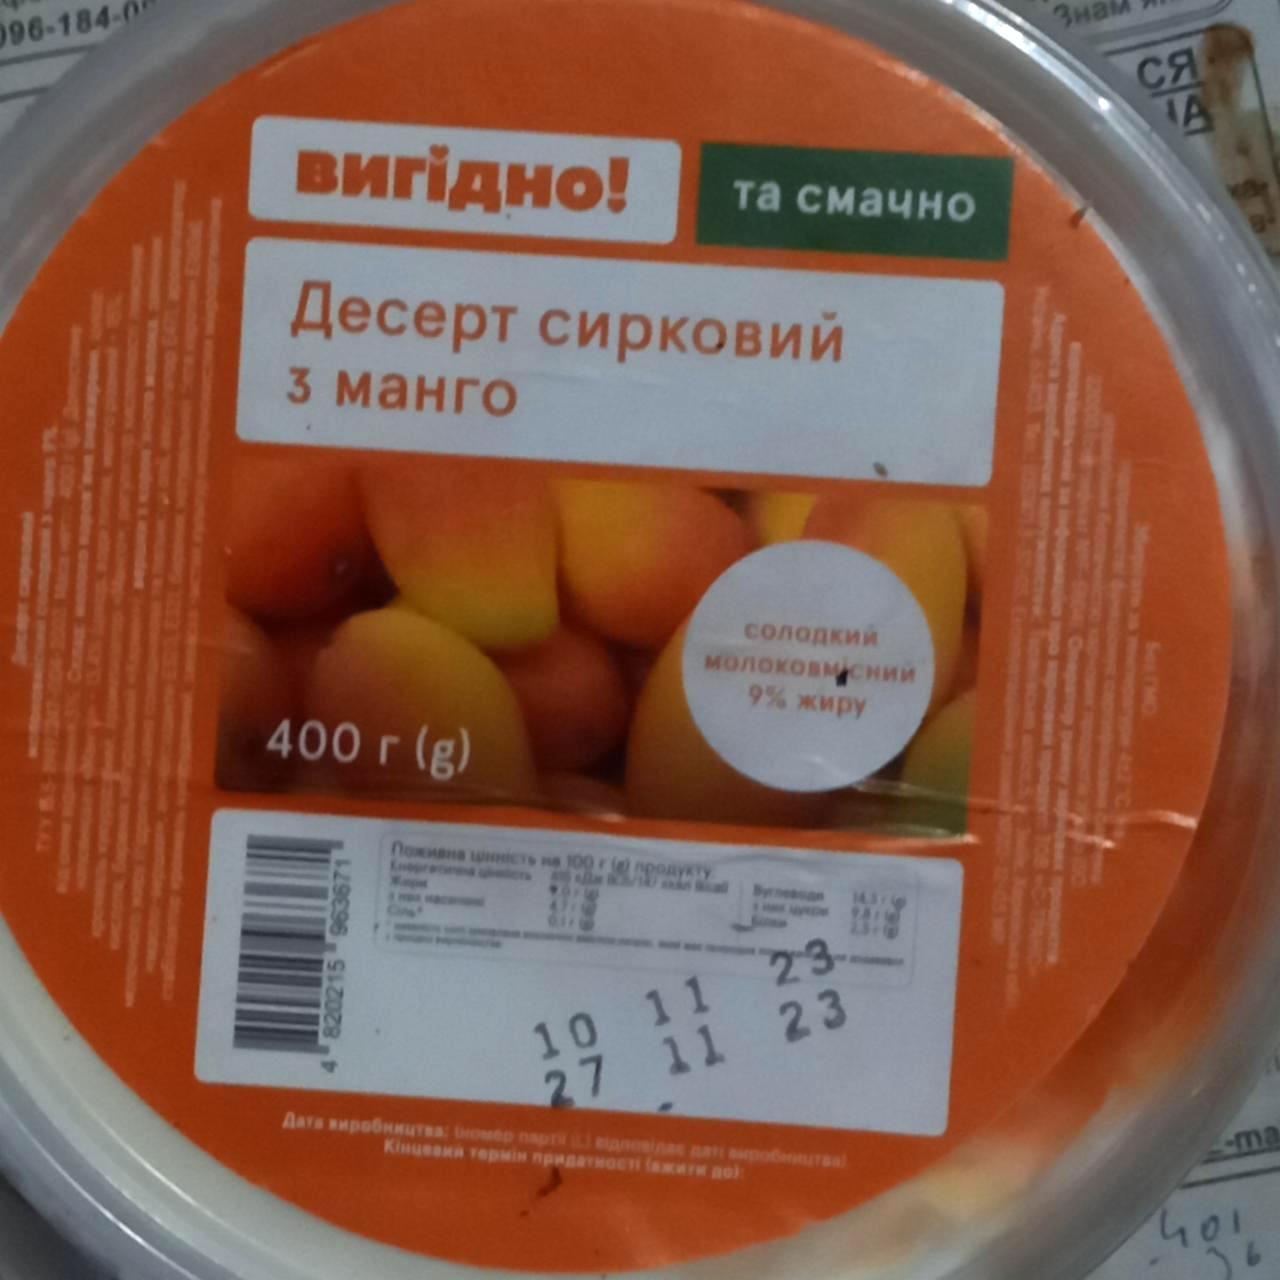 Фото - Десерт сирковий 9% з манго Вигідно!